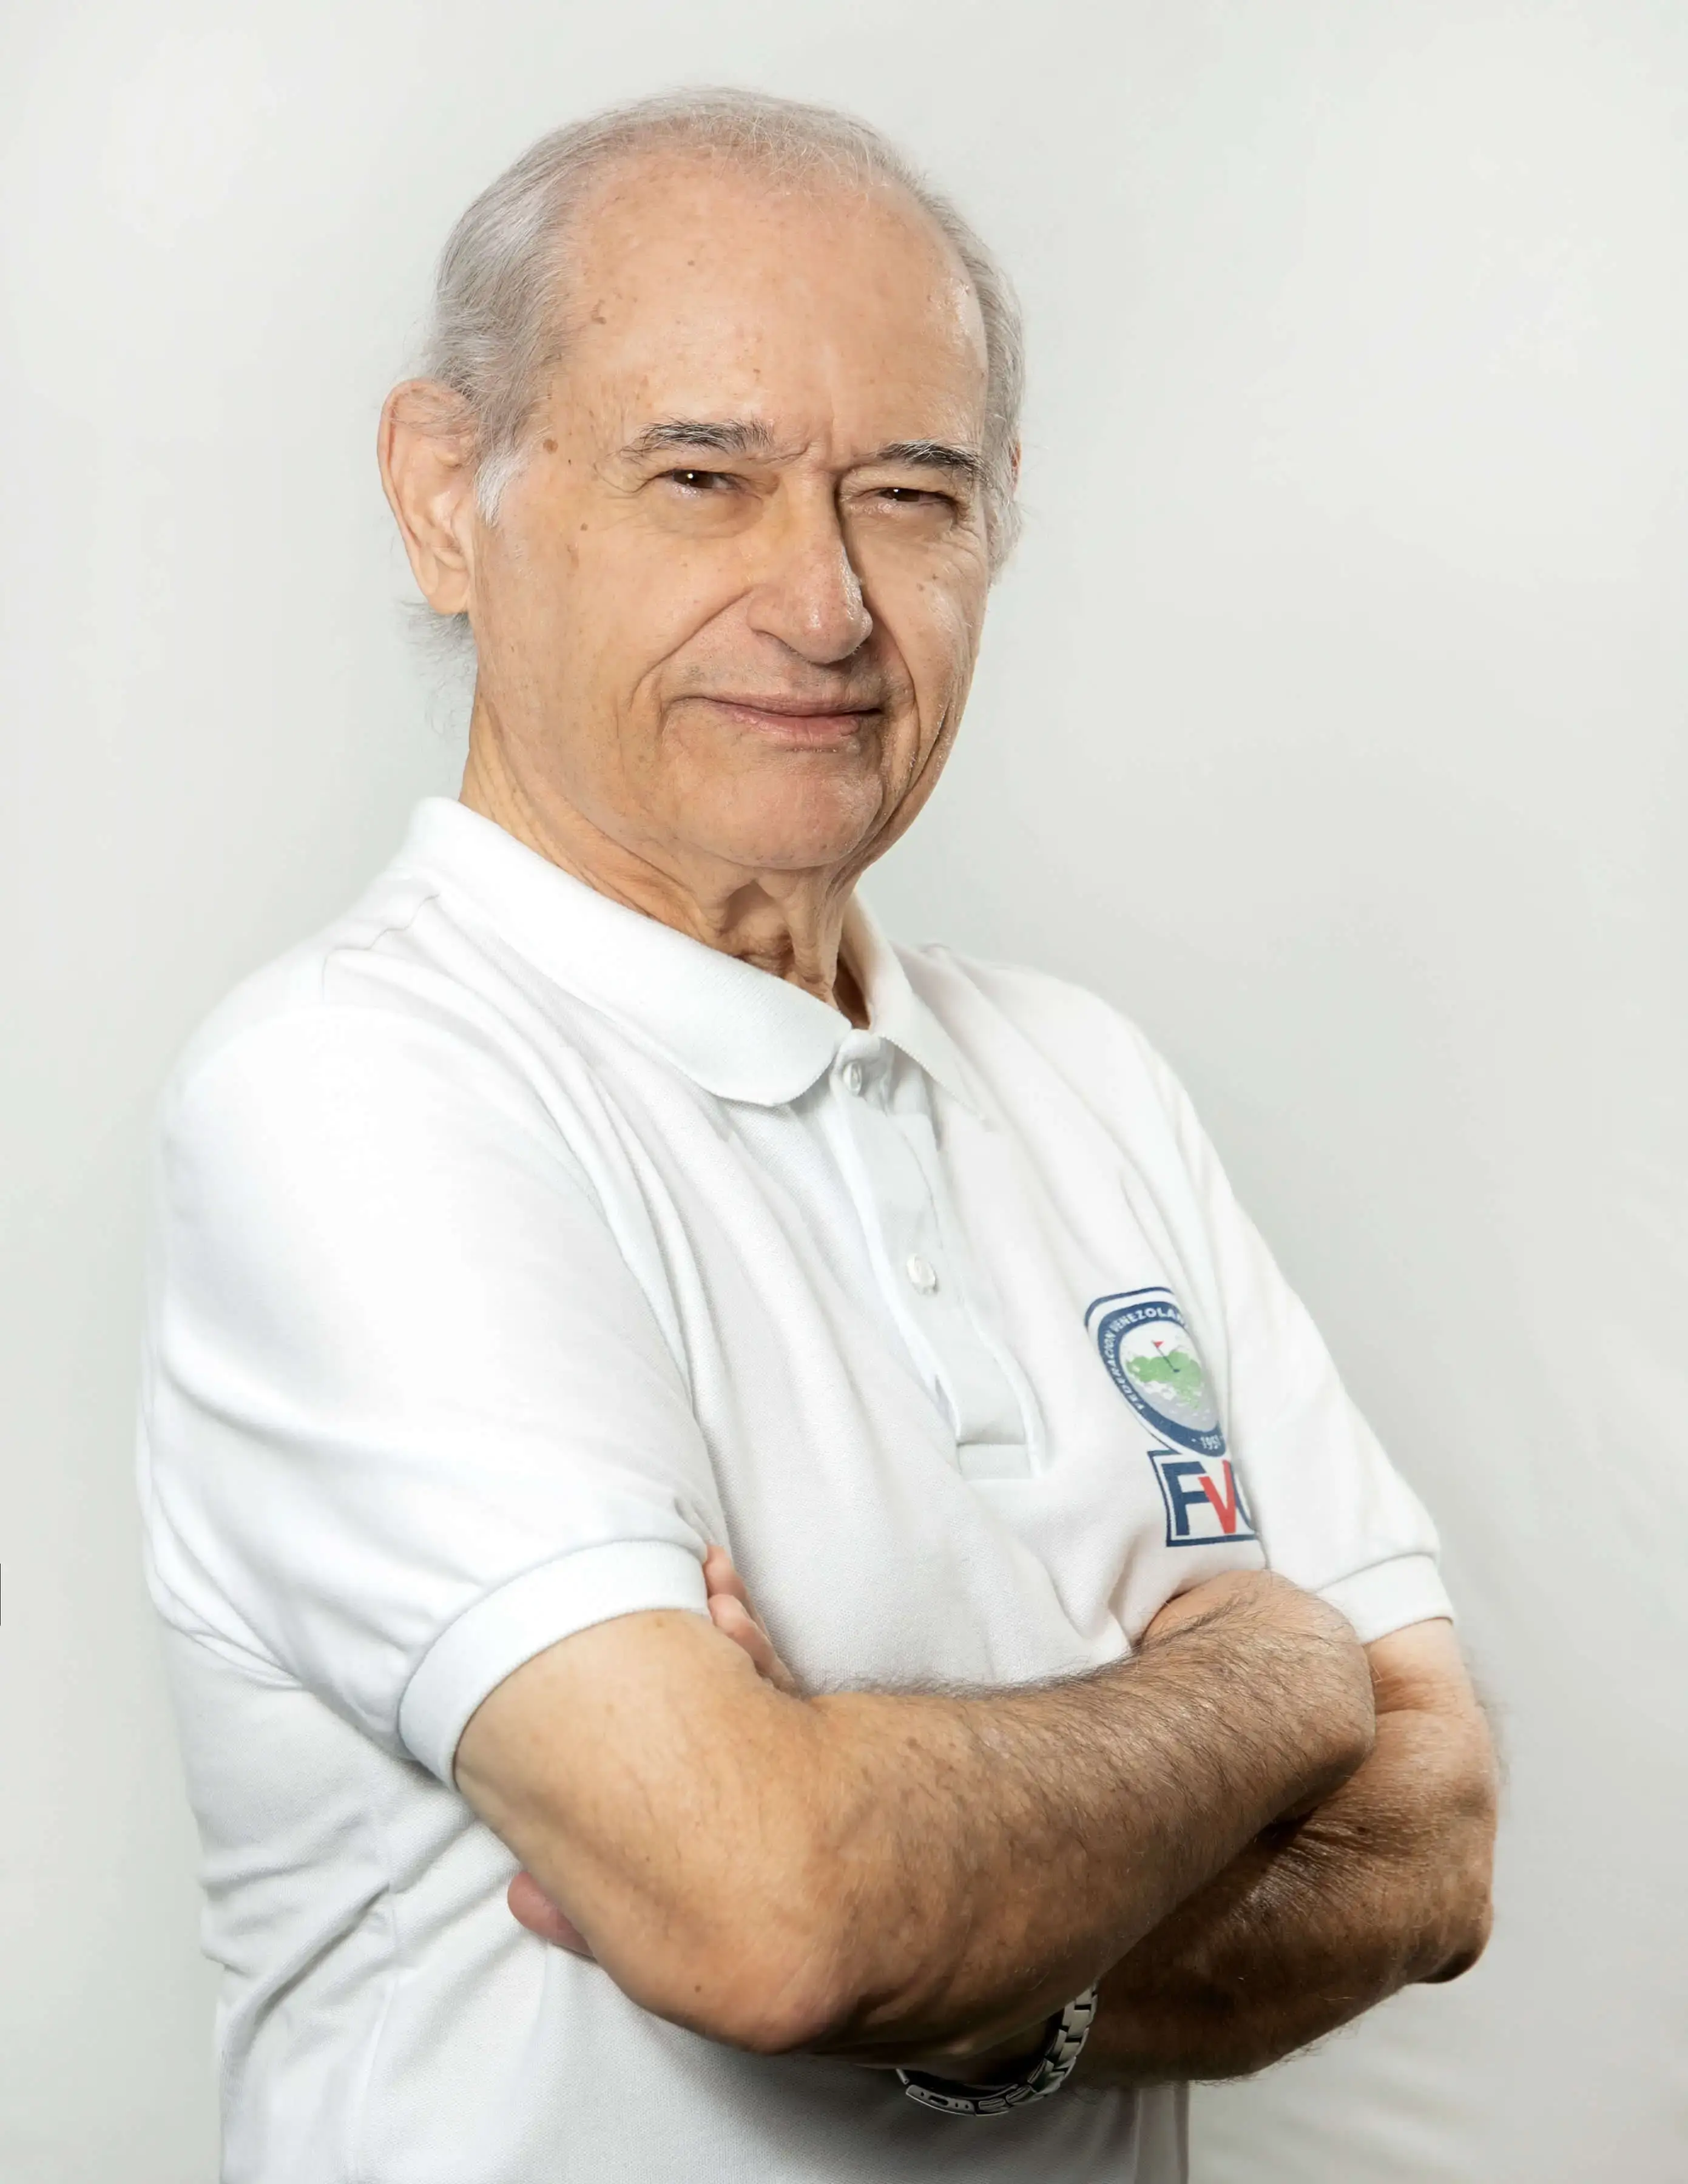 Manuel Álvarez Alfonzo